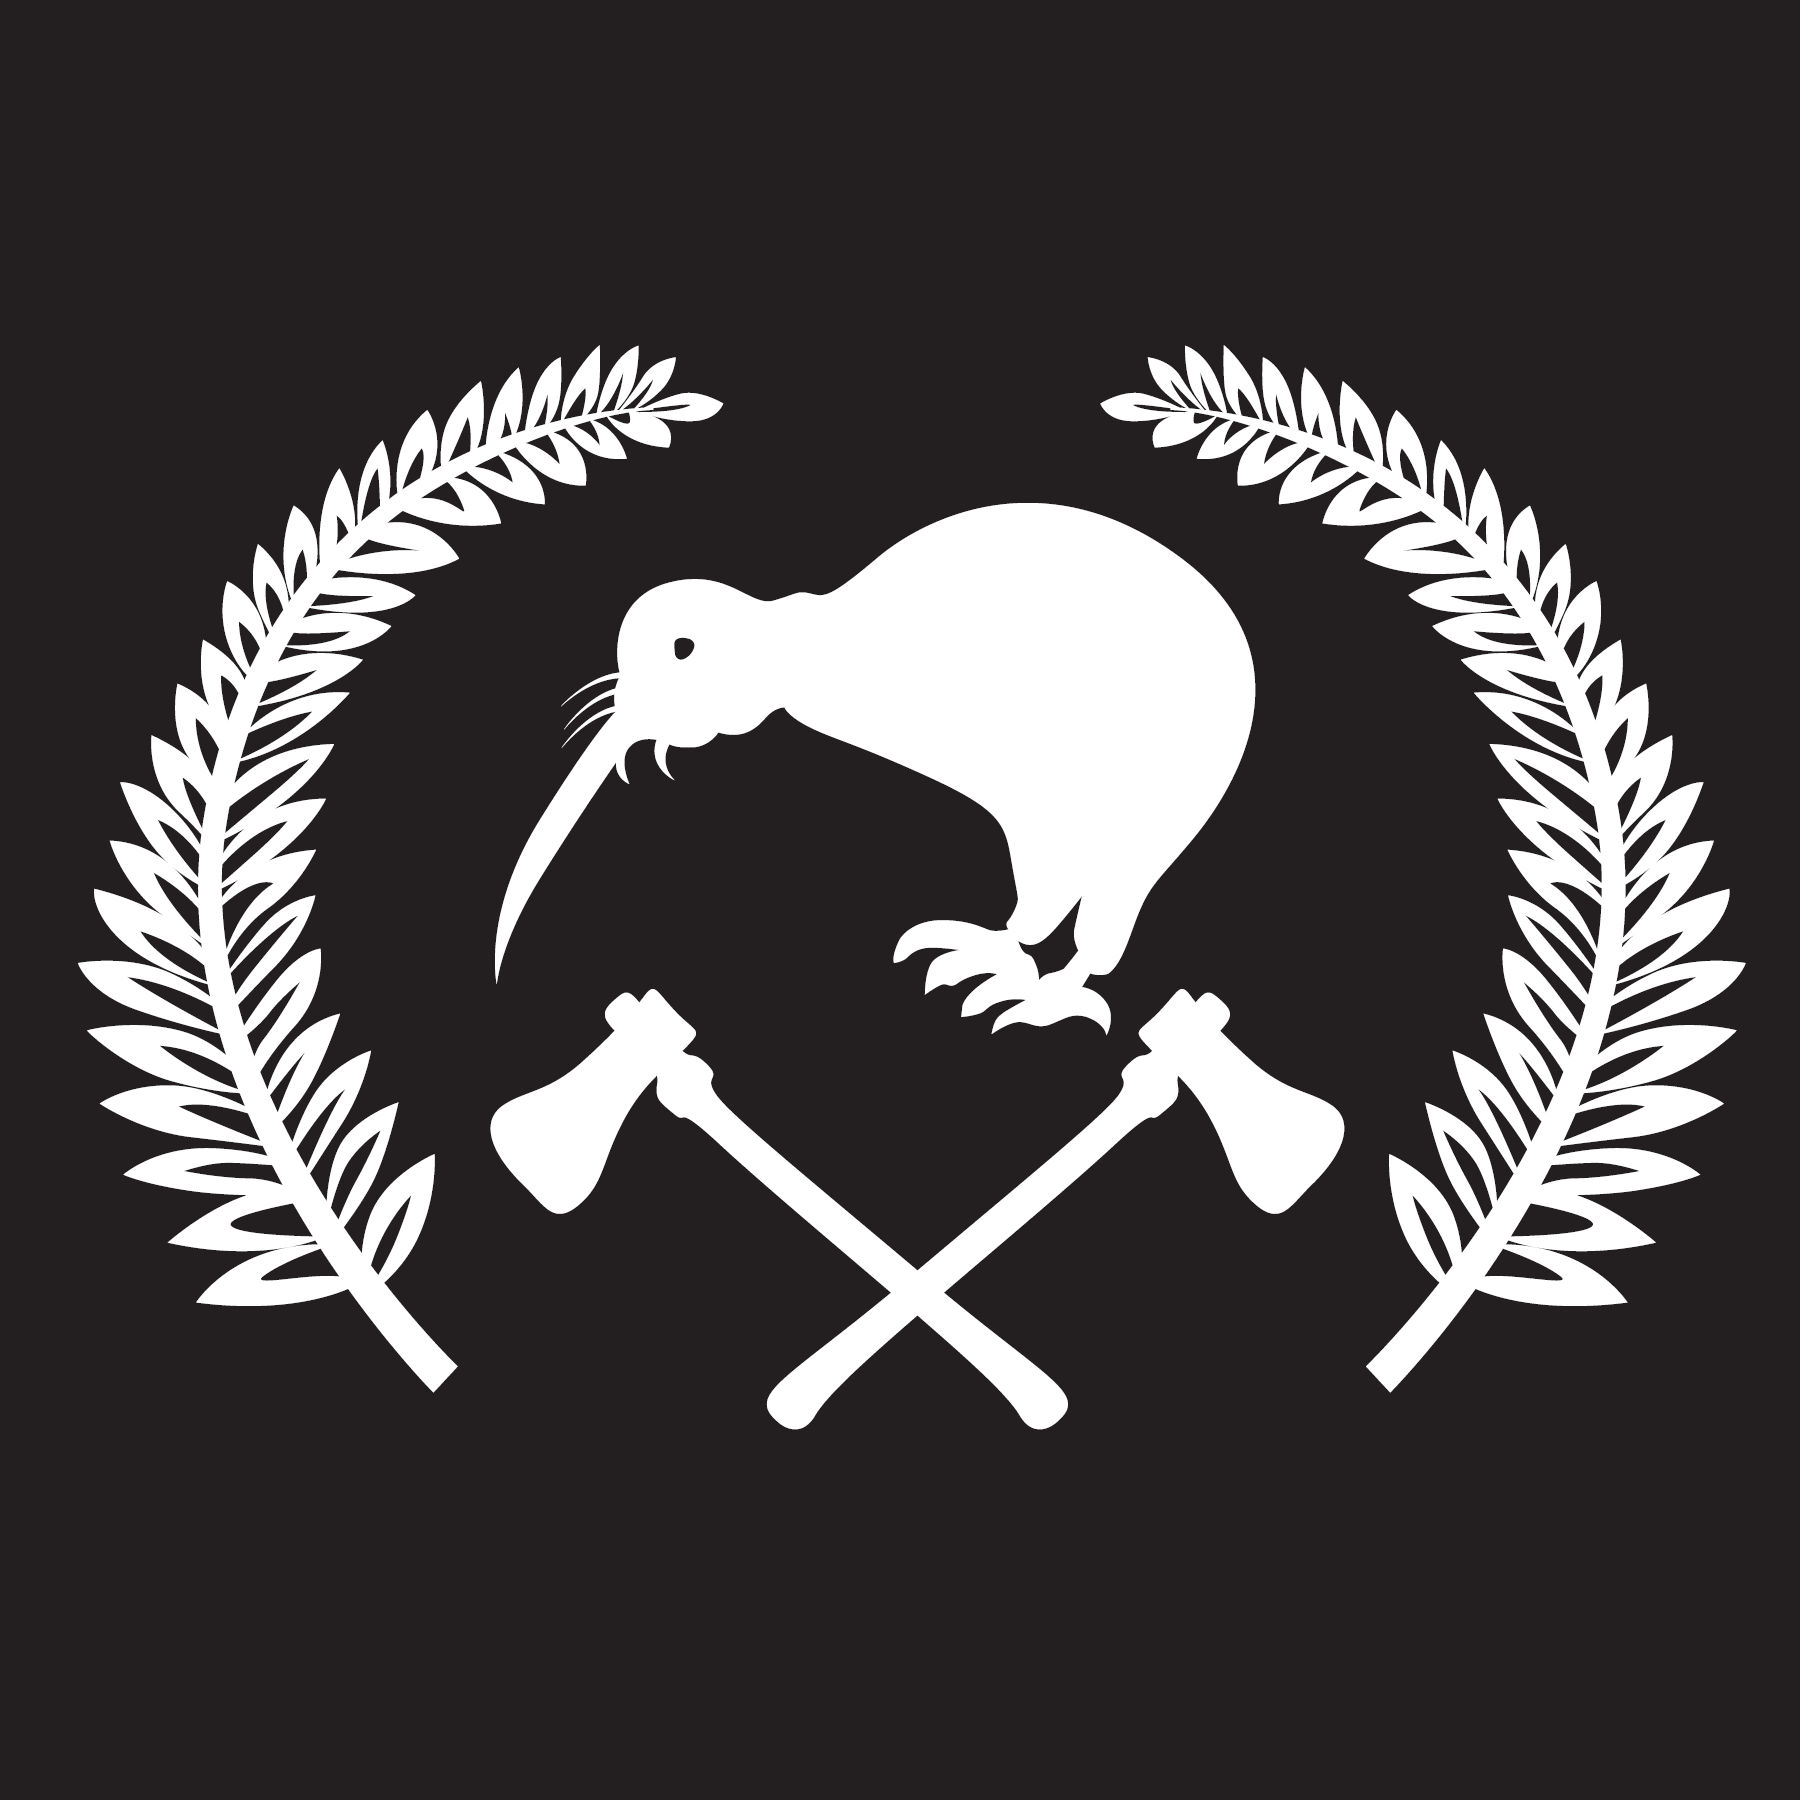 New Zealand Axemen's Association